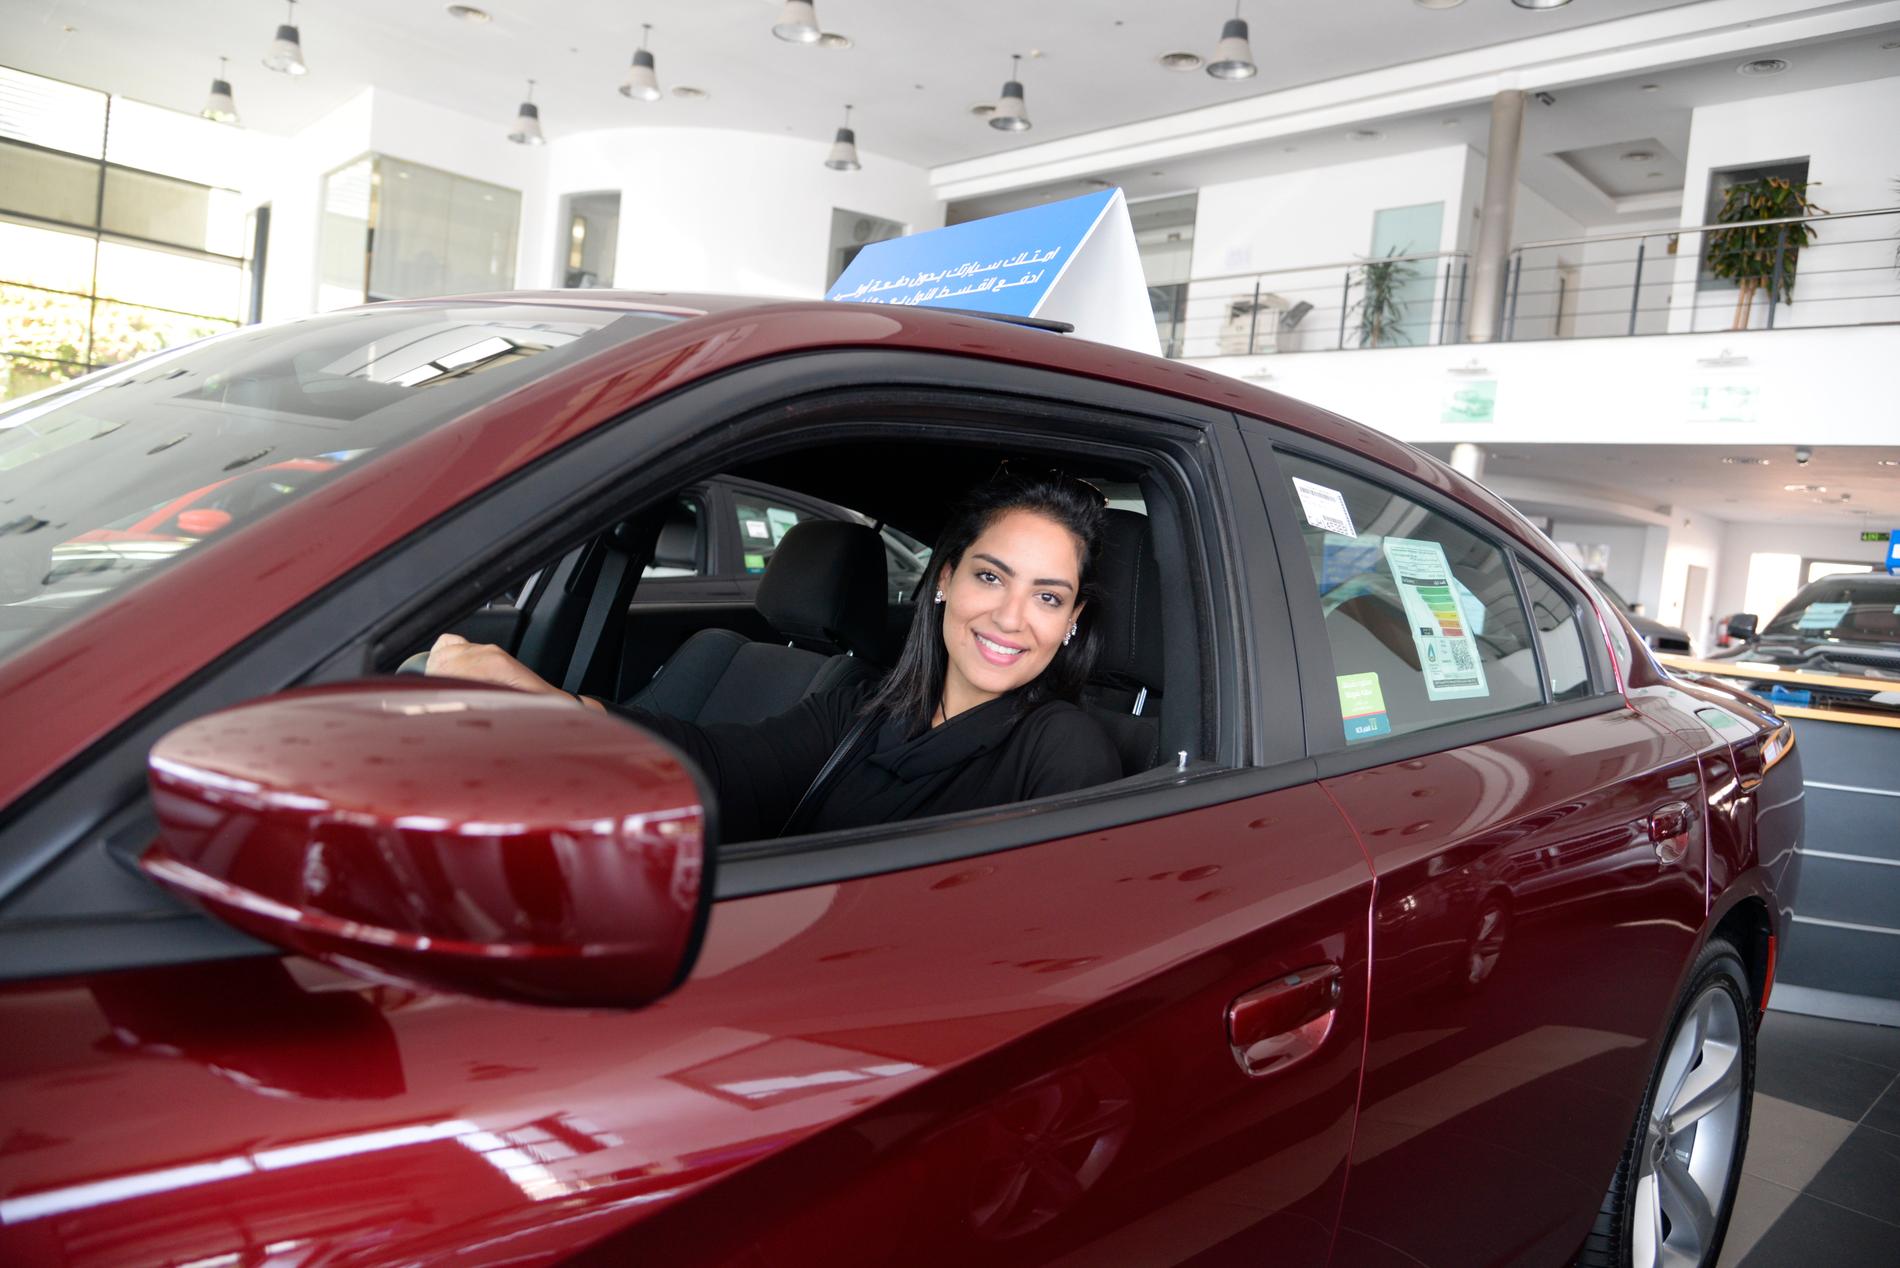 Nouf Abuljadayel hos en bilhandlare i Jidda inför det att det blev tillåtet för kvinnor att köra bil i Saudiarabien.